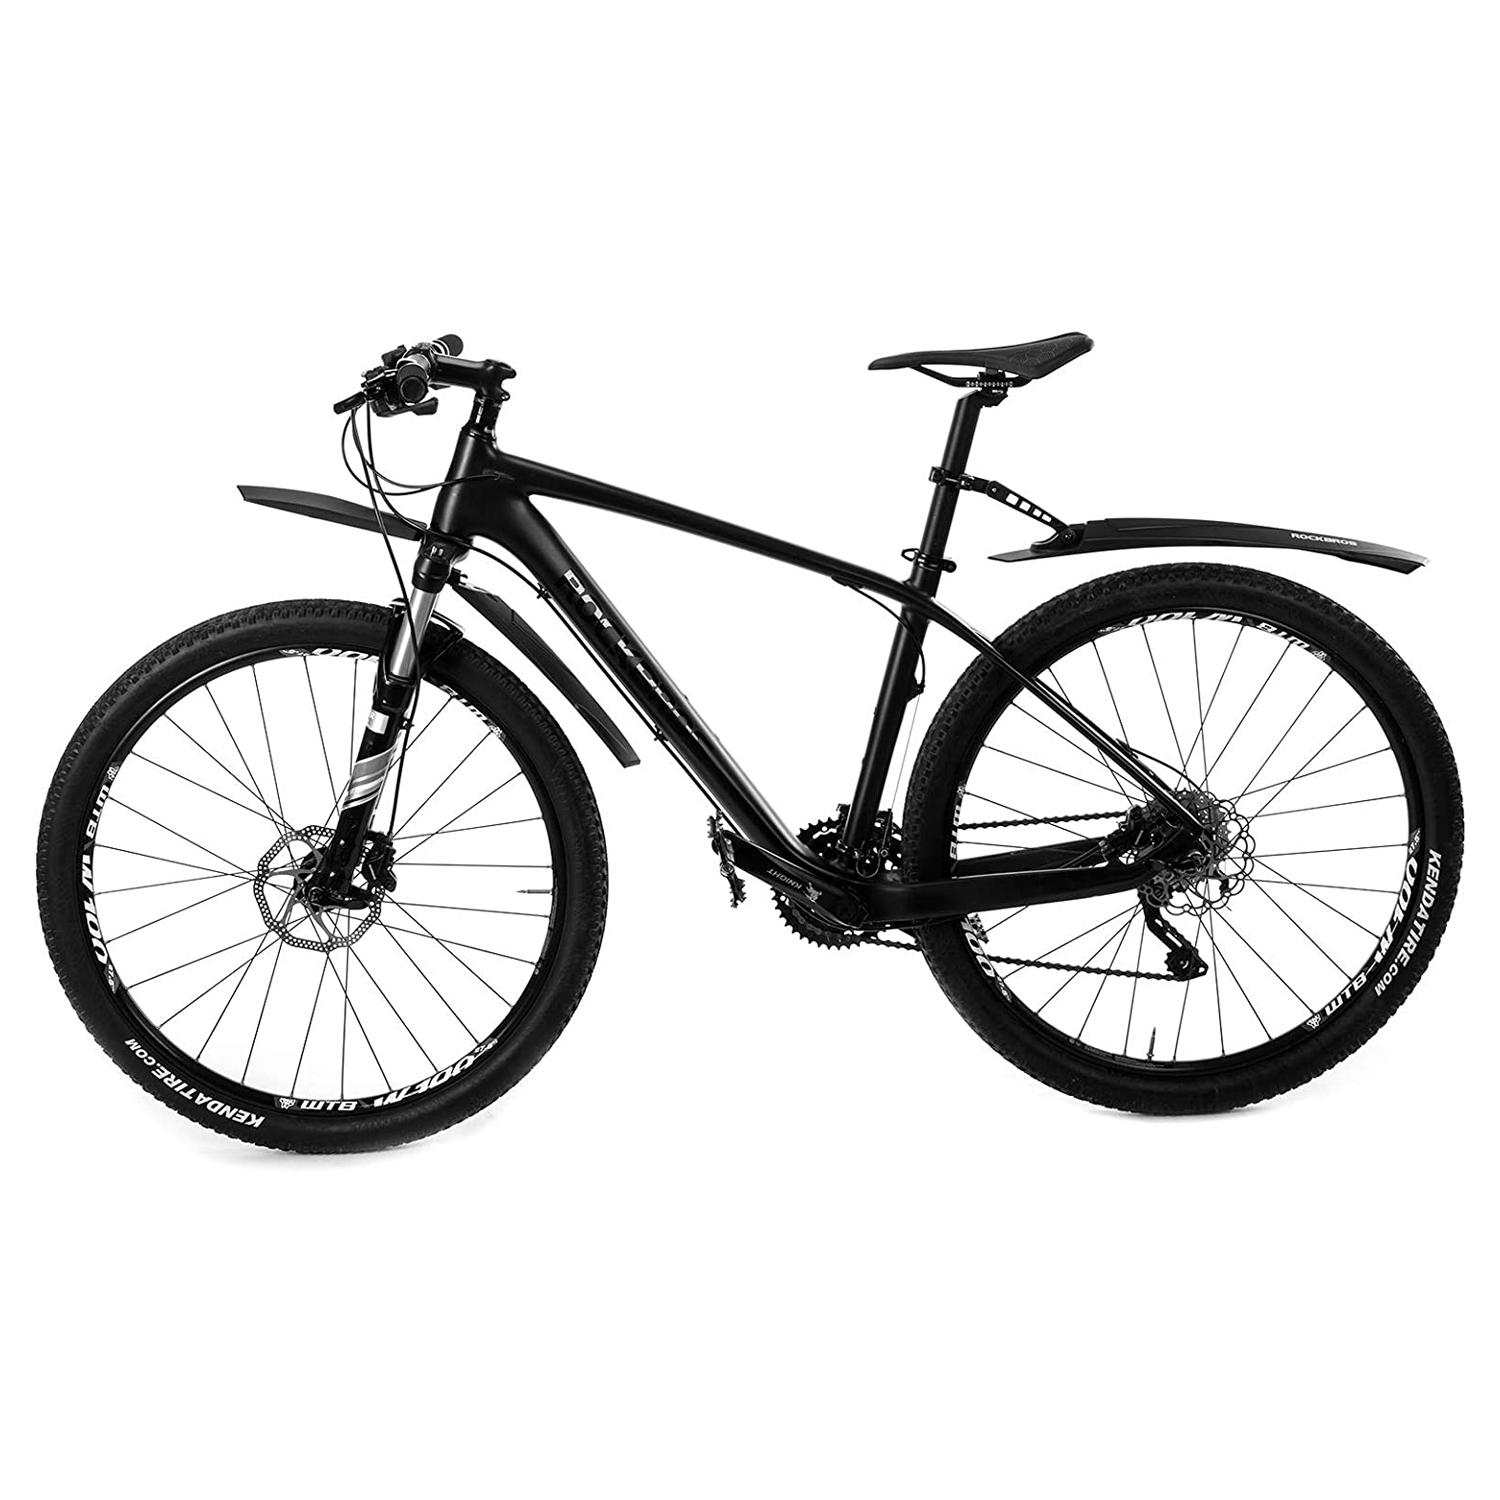 Купить горные велосипеды, велозапчасти и аксессуары в магазинах Триал-Спорт